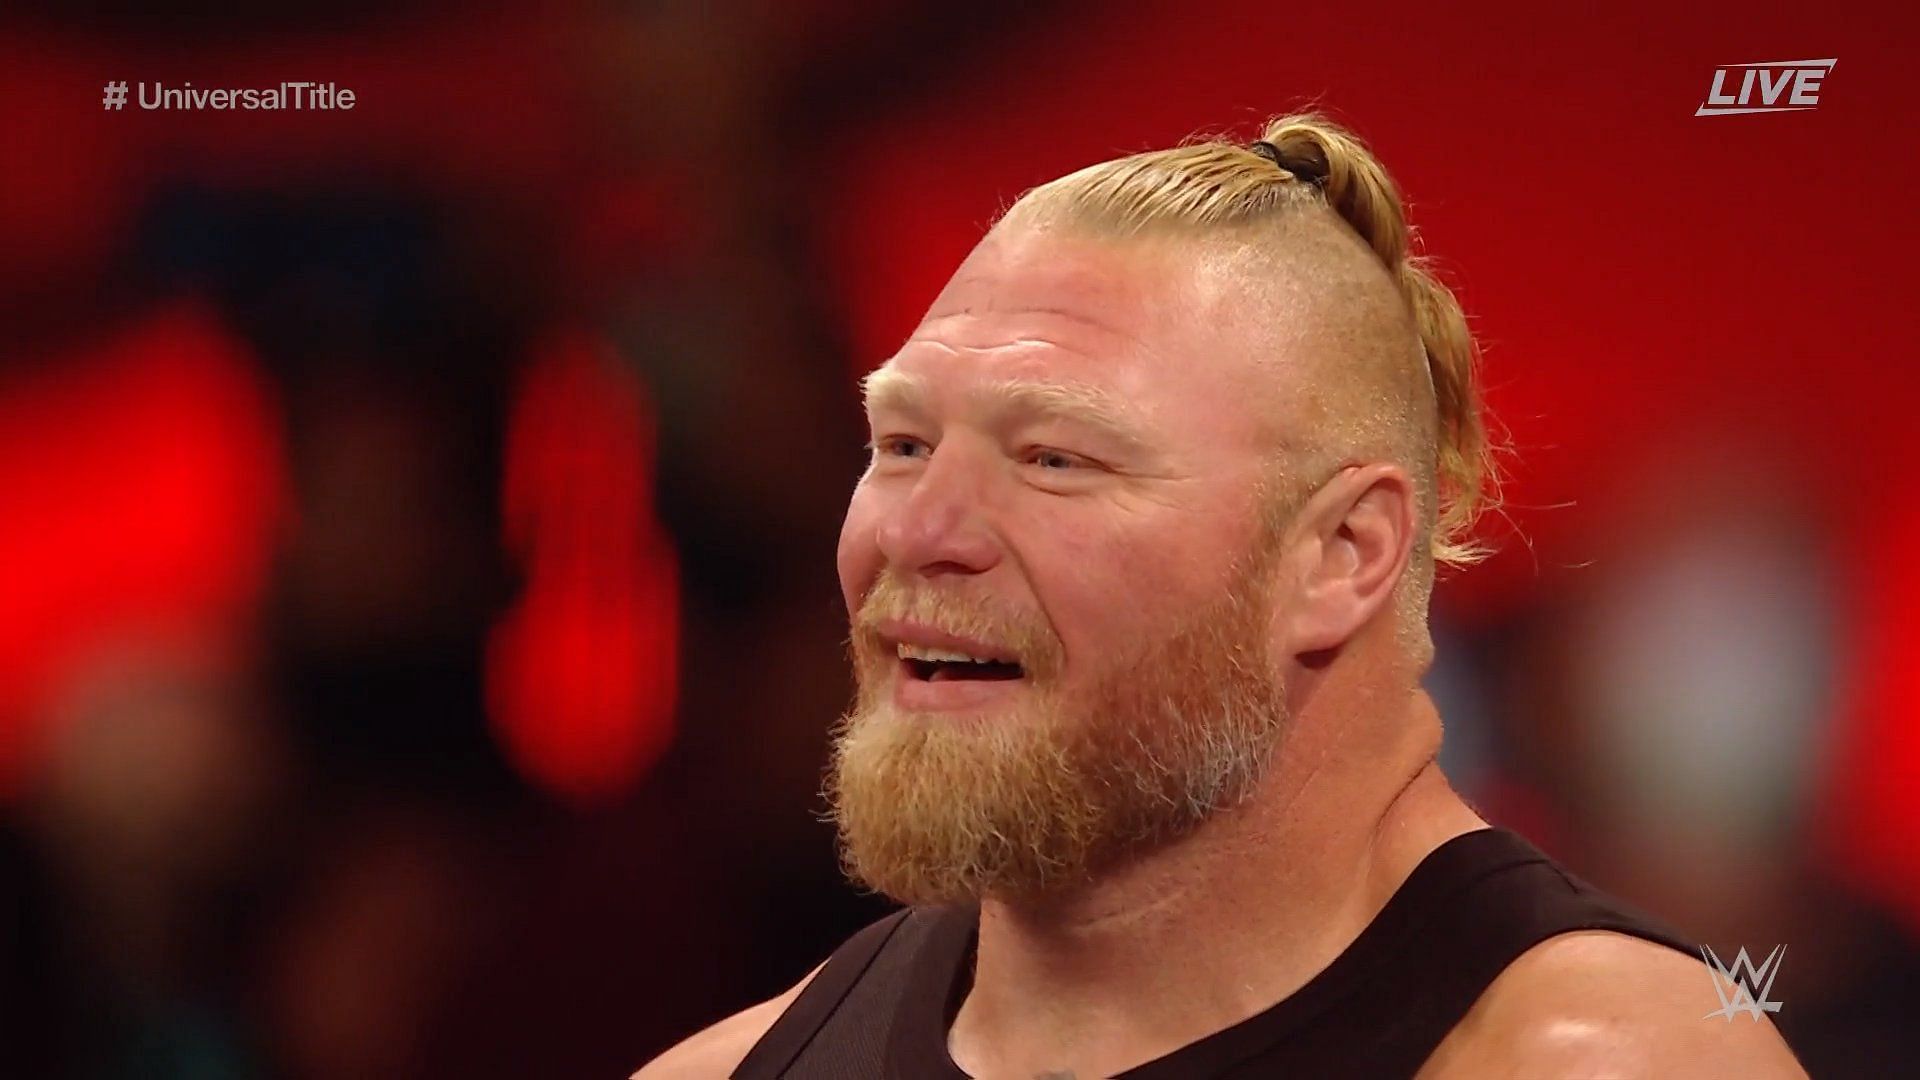 Brock Lesnar is one of wrestling